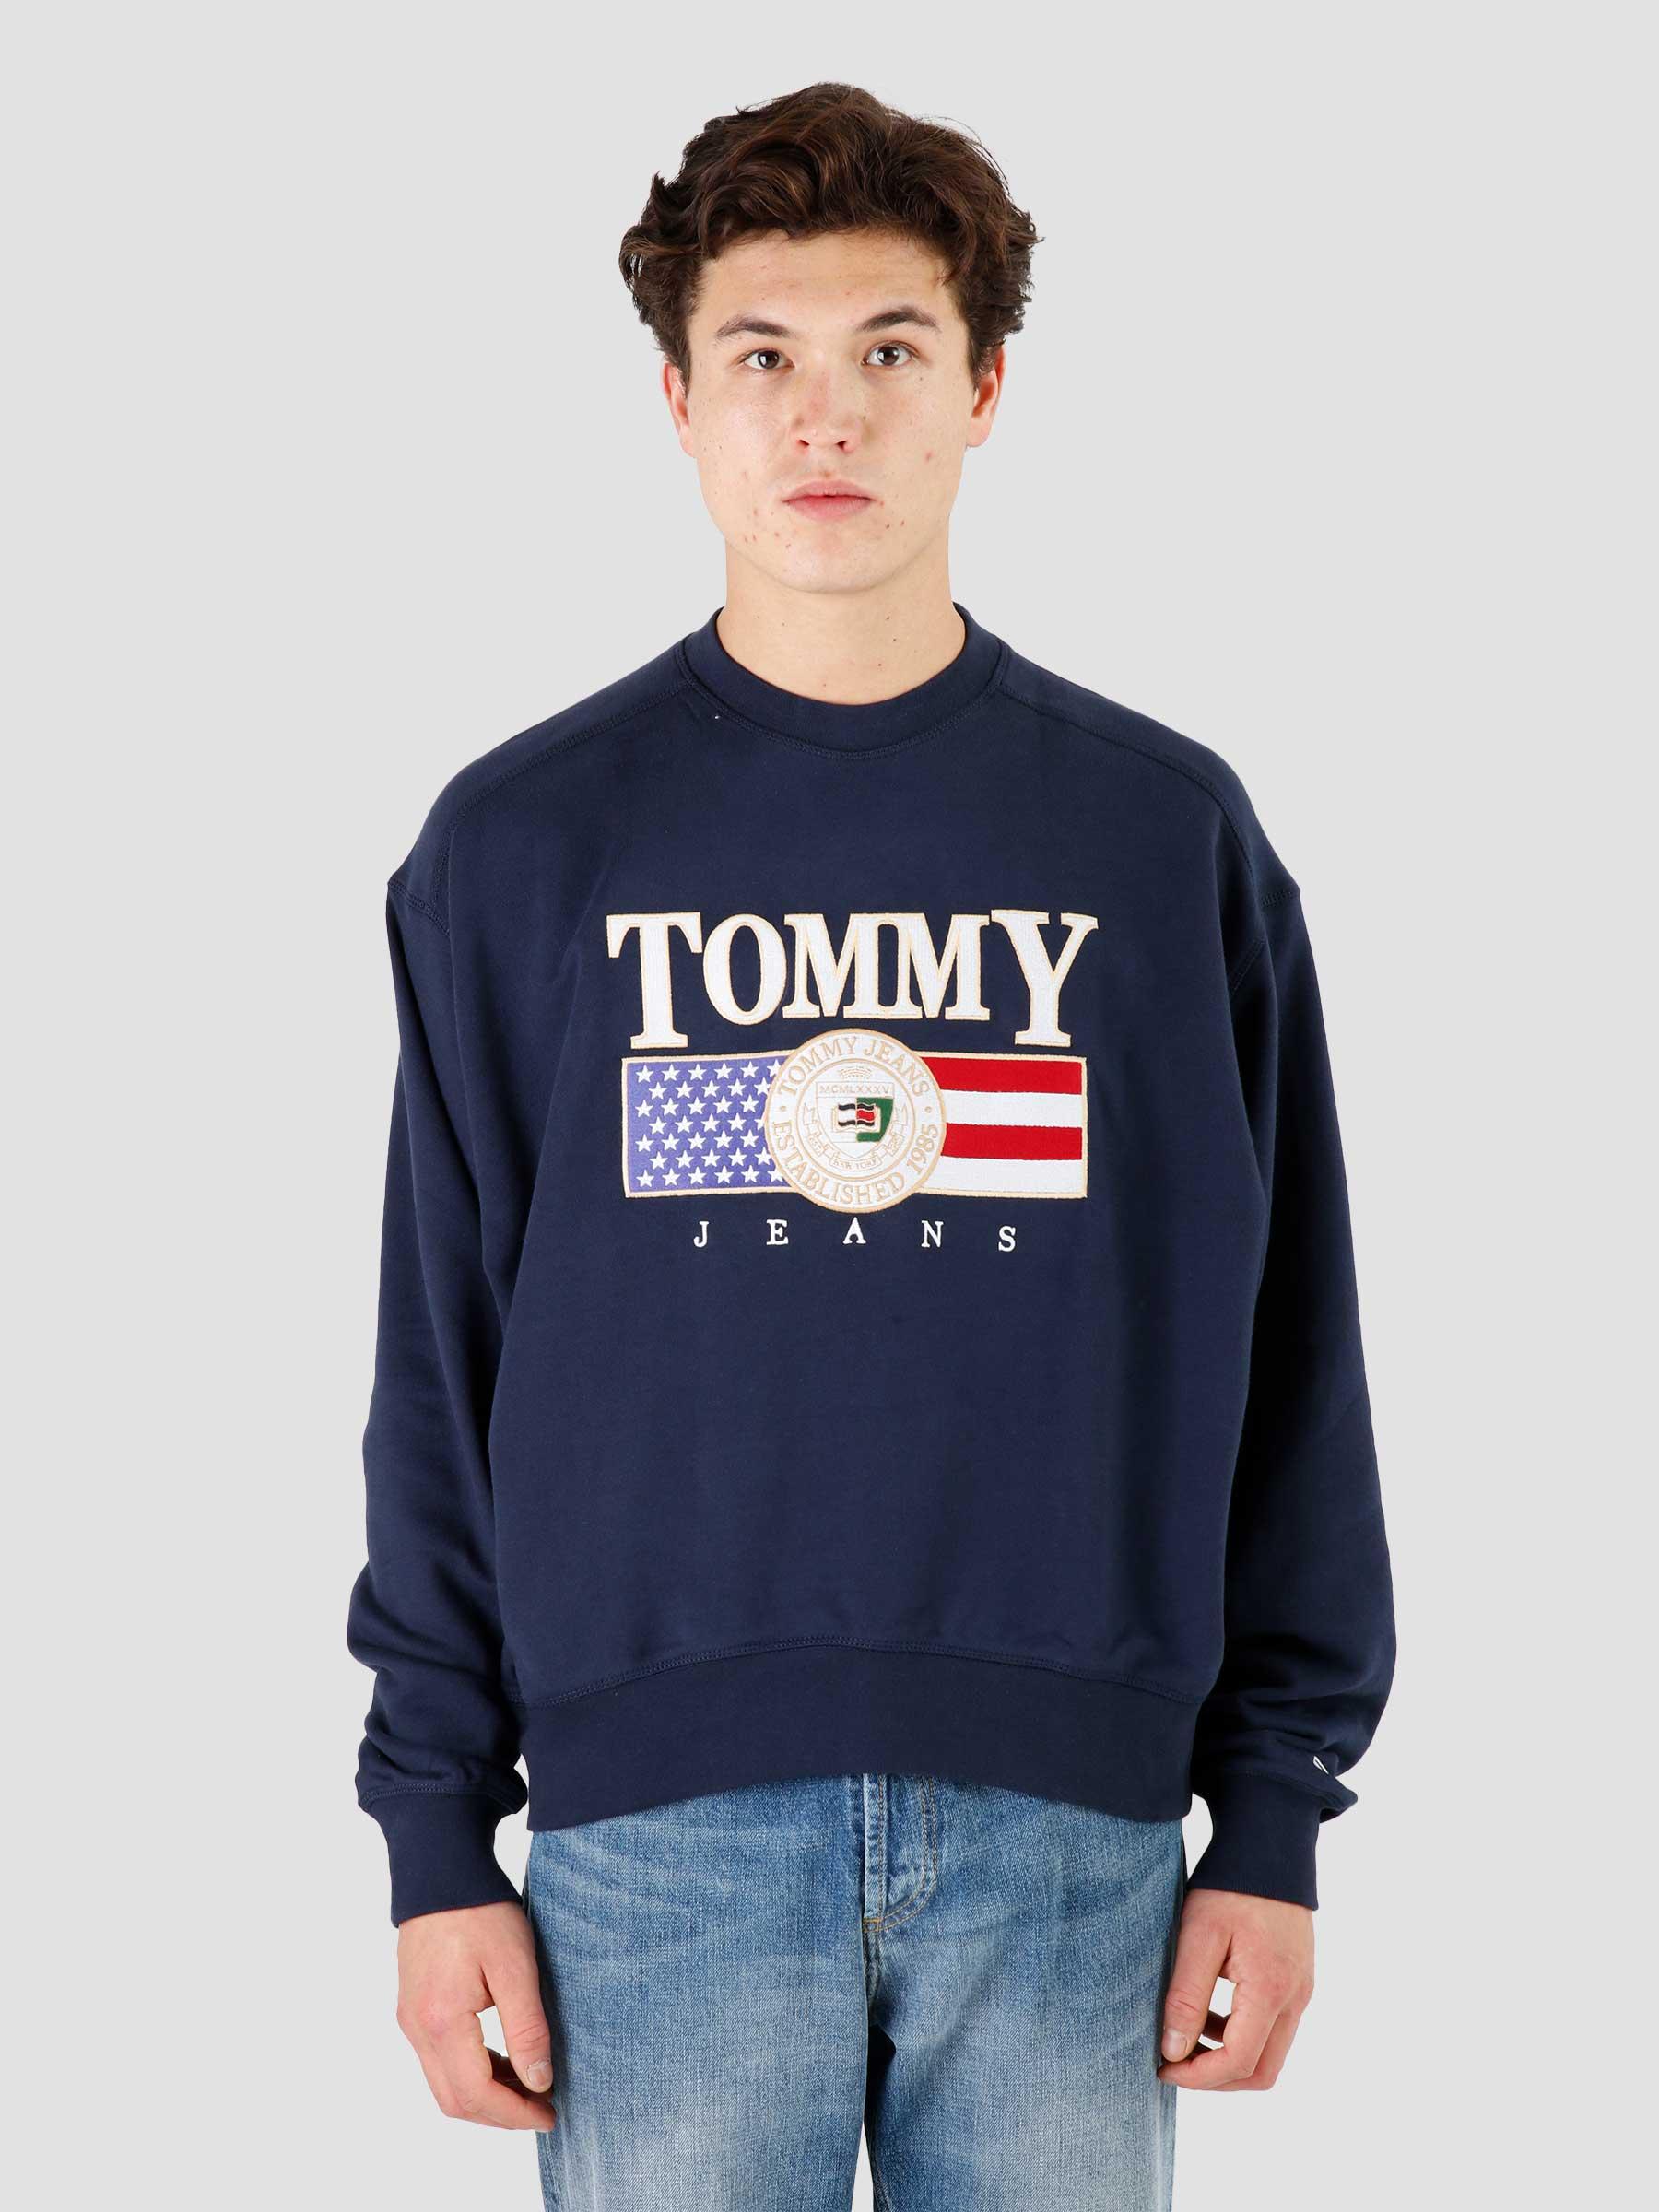 Boxy TJ Jeans Navy Freshcotton Crewneck TJM Twilight - Luxe Tommy